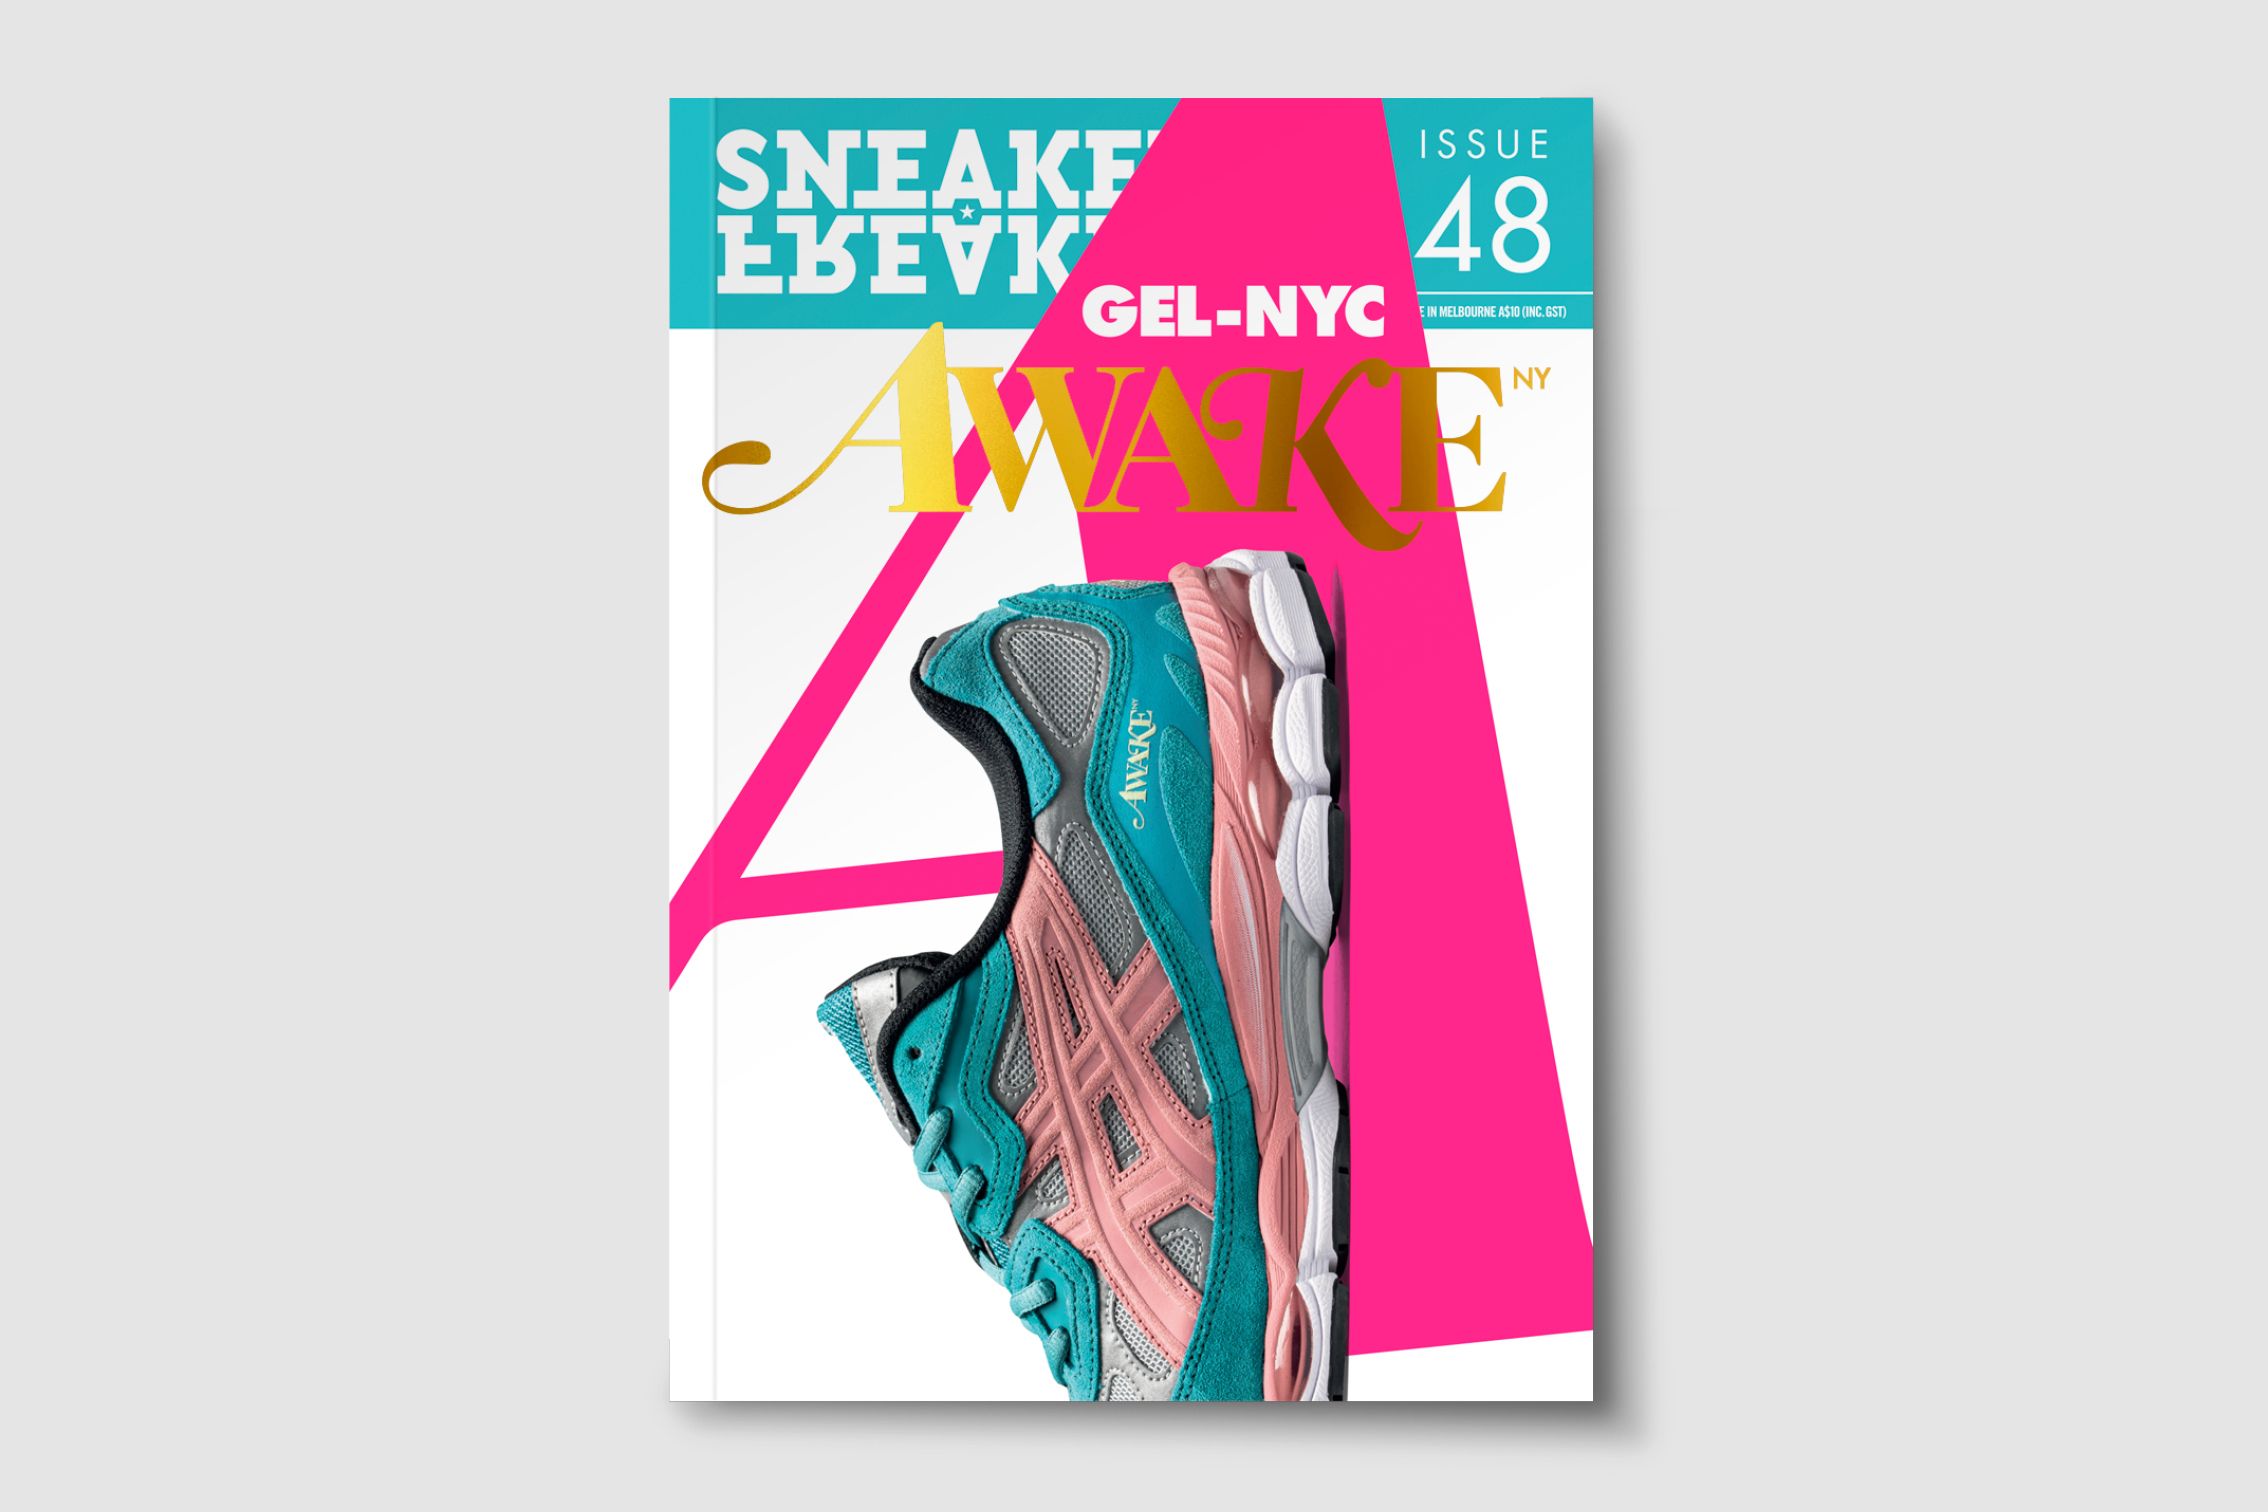 Sneaker Freaker Issue 41-Now